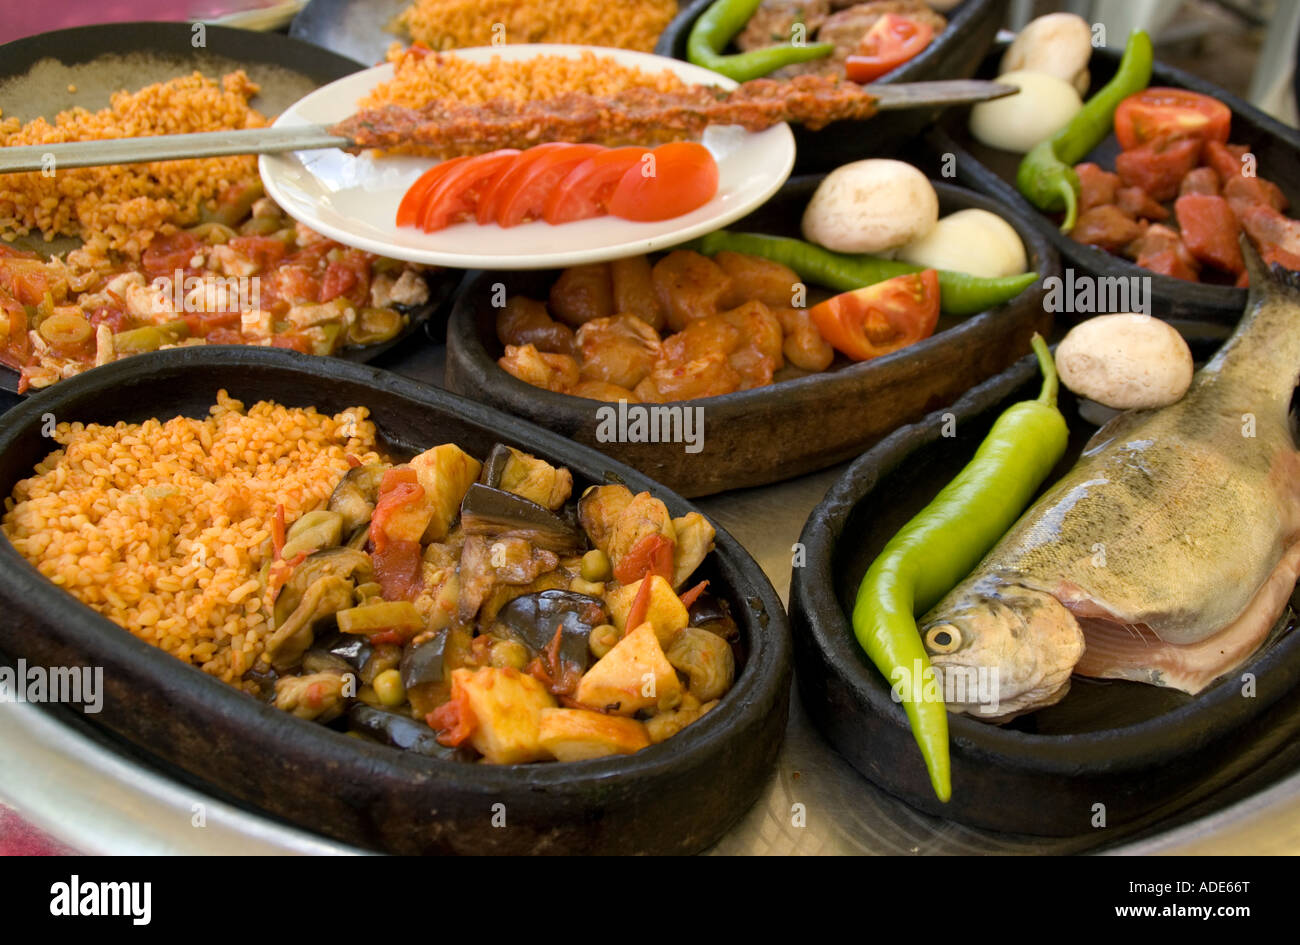 Ingrédients alimentaires traditionnels turcs Banque D'Images